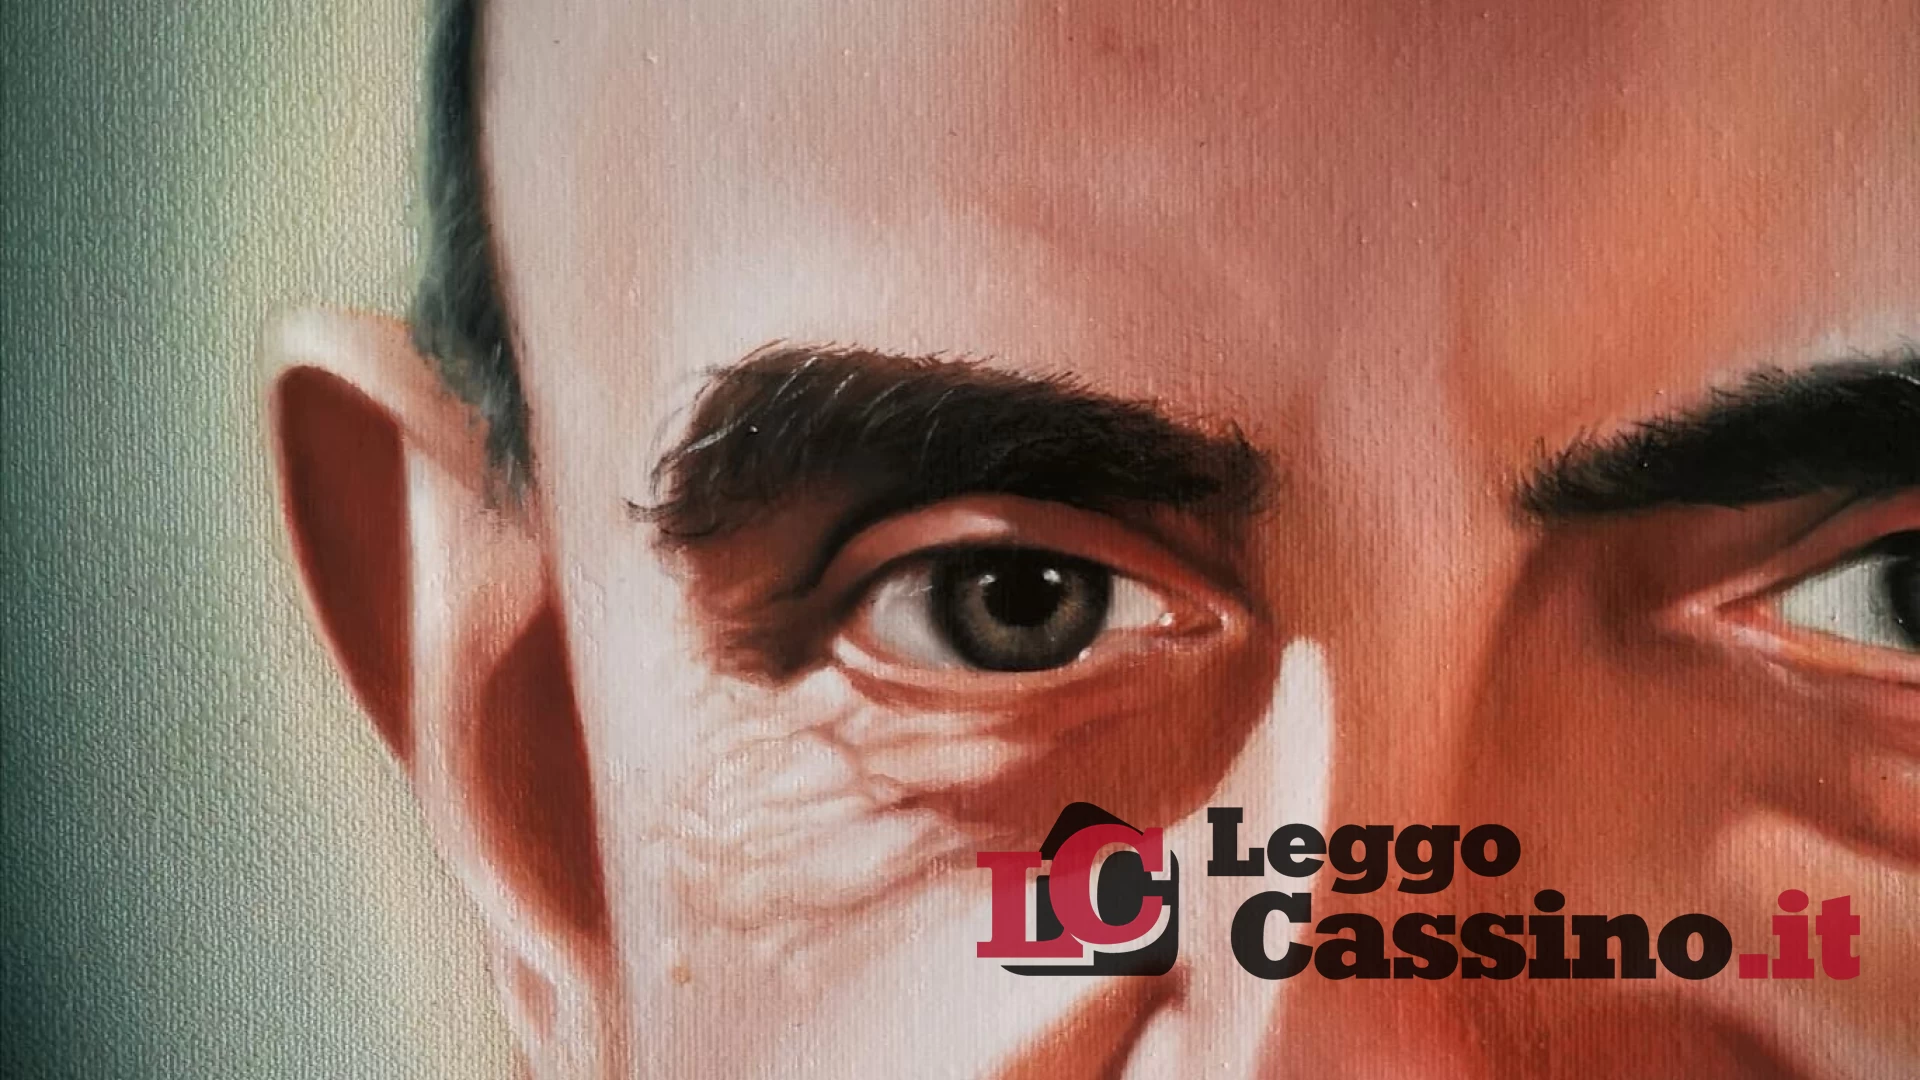 Ecco la tela di Paolo VI a Cassino